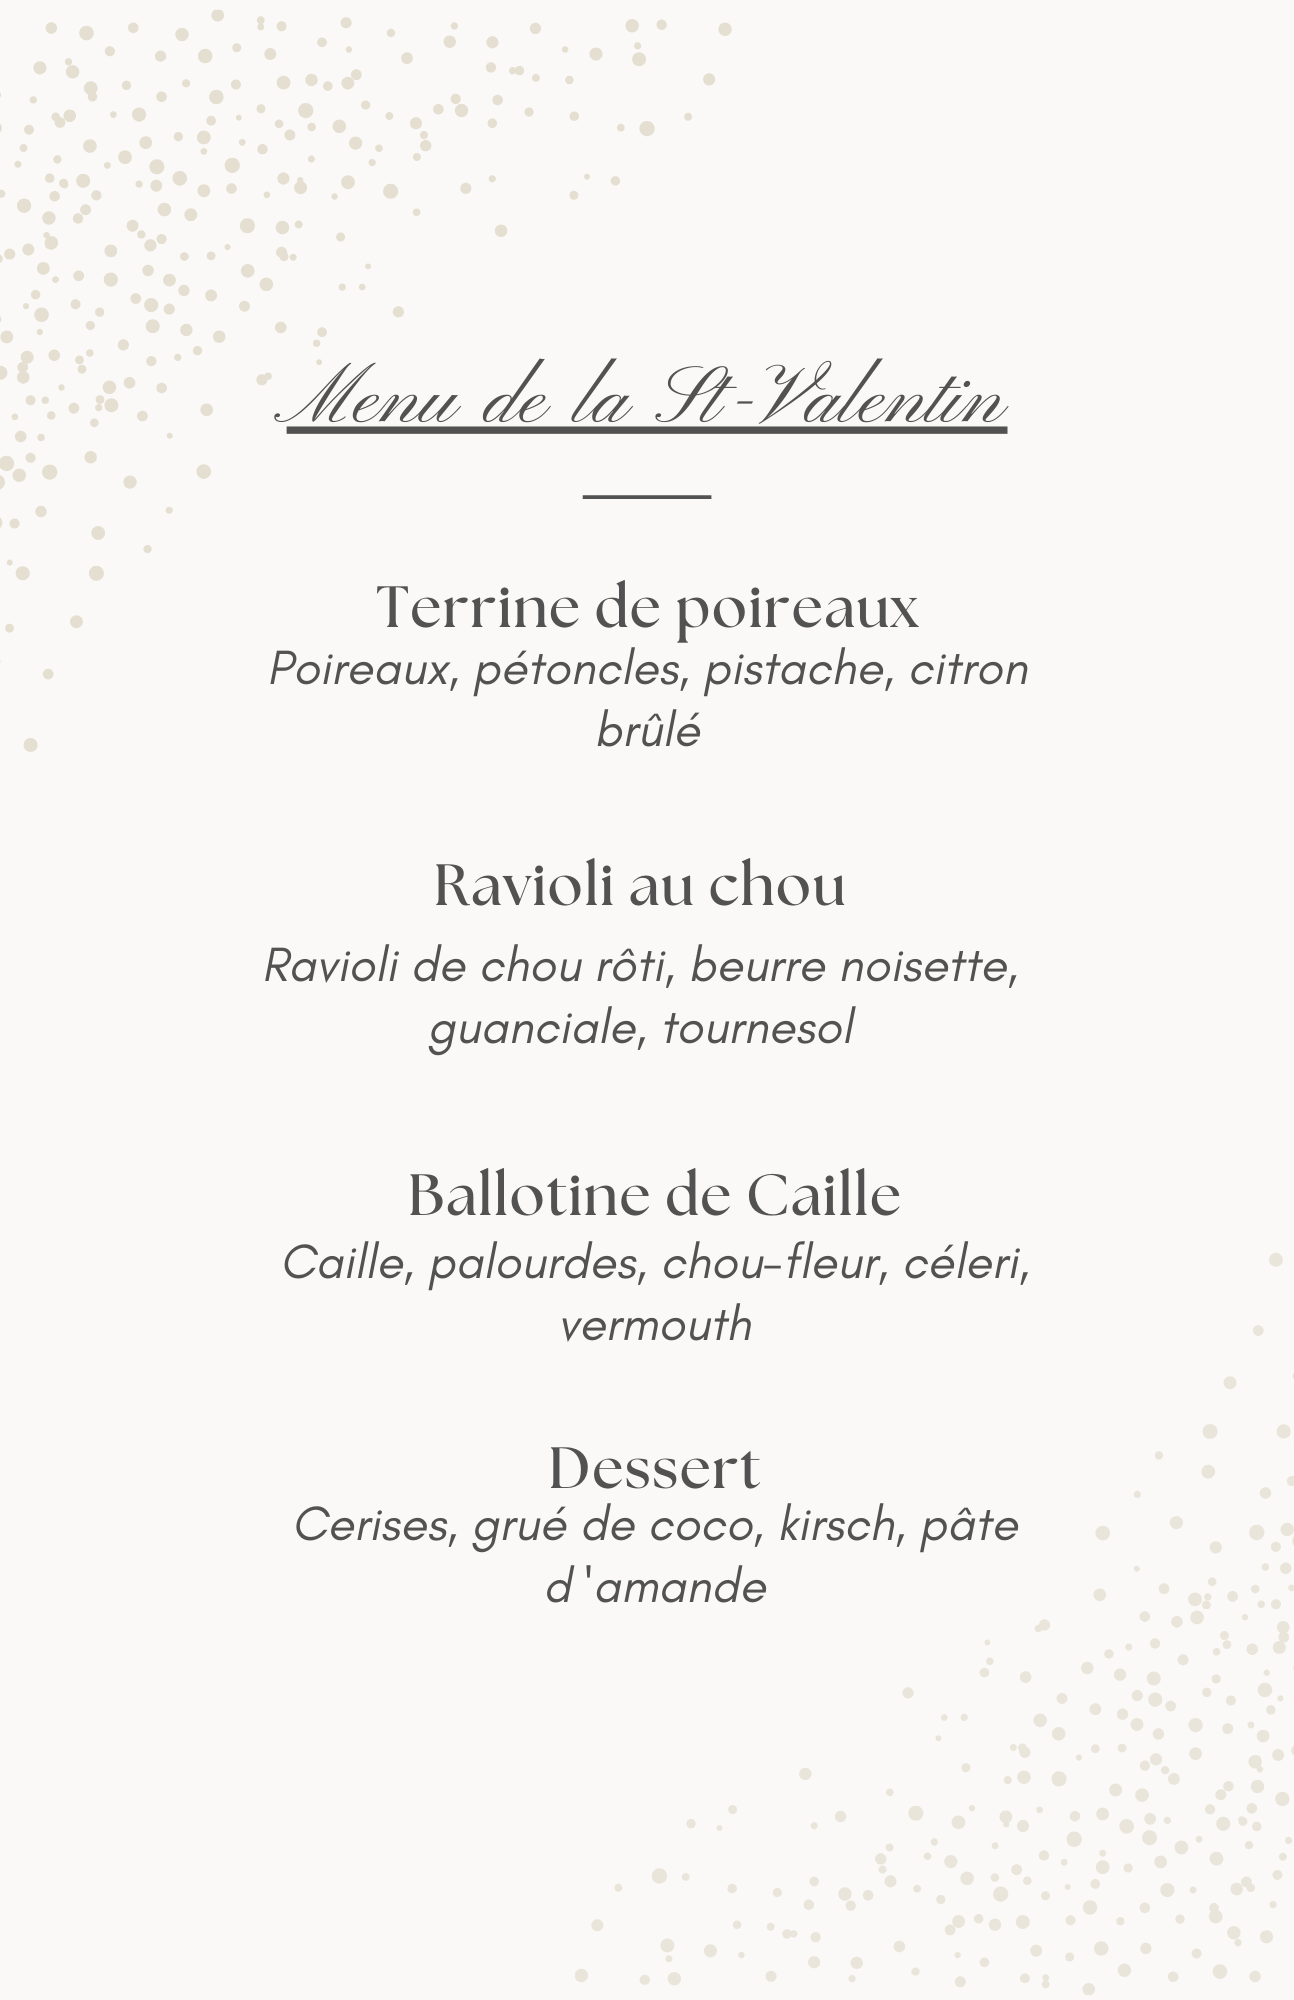 Valentine day menu